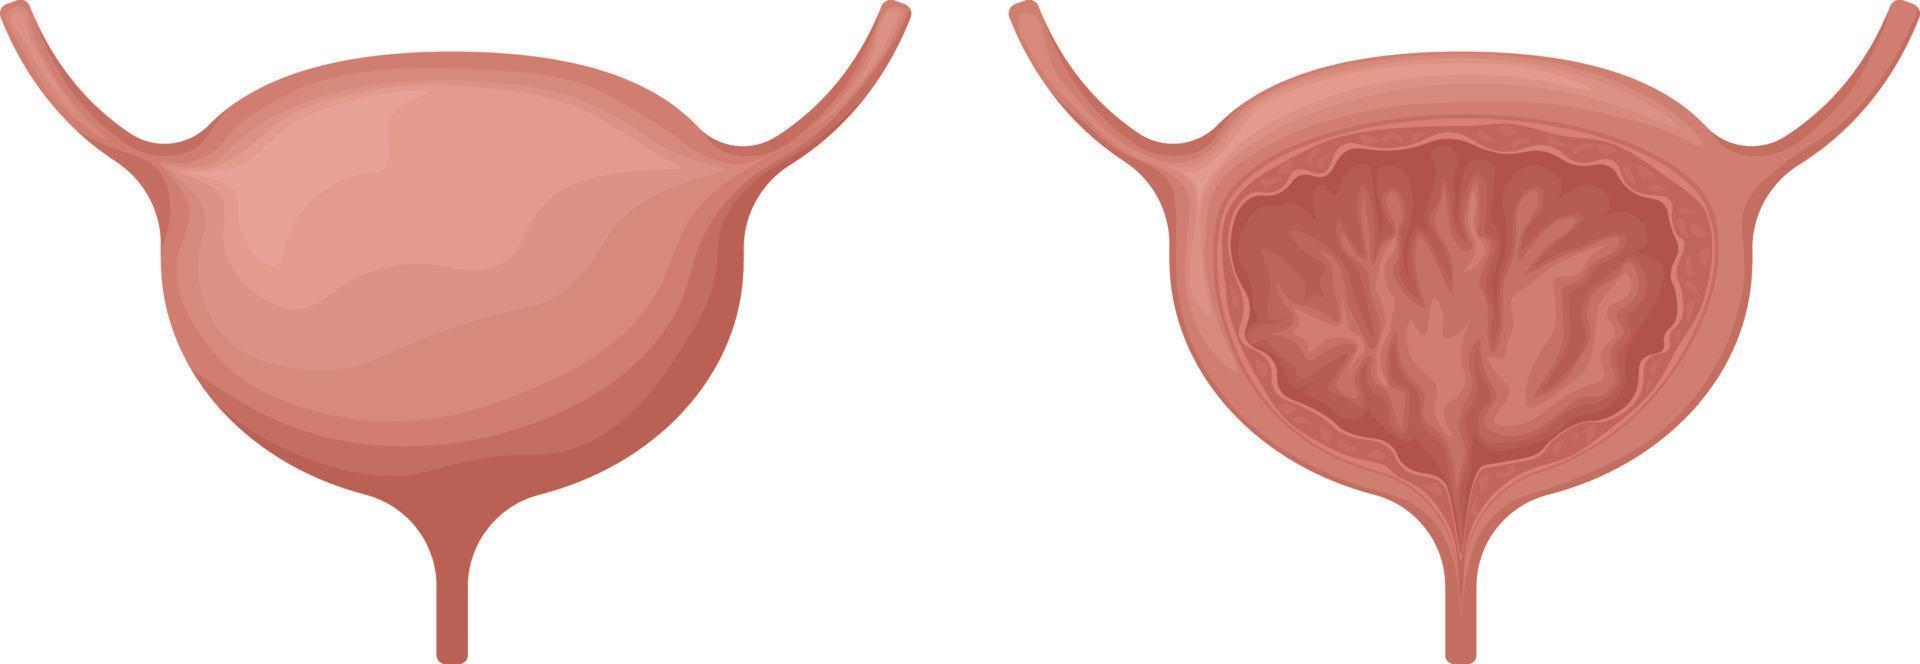 le vessie. anatomique image de le vessie. Humain interne organes. urinaire système dans le section. vecteur illustration isolé sur une blanc Contexte